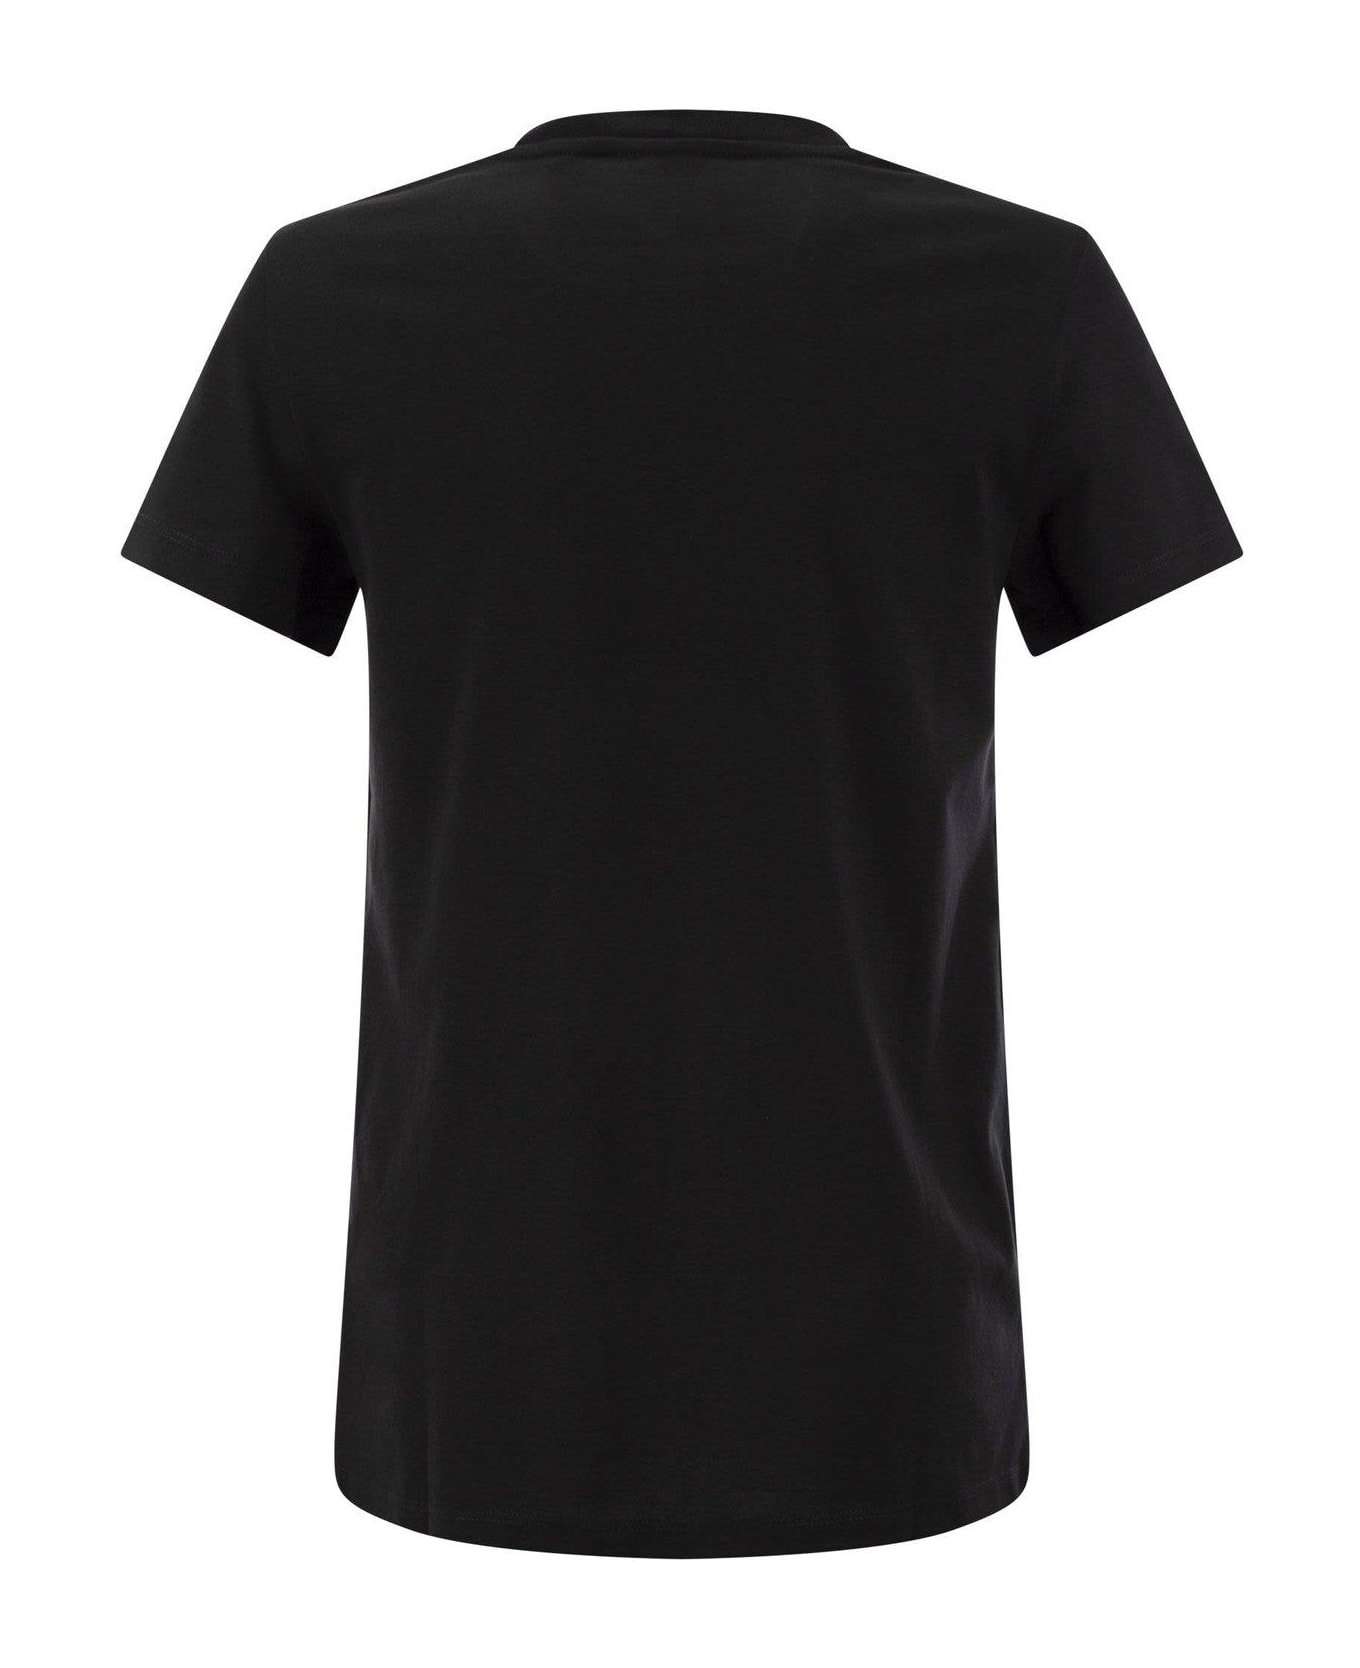 Max Mara Taverna T-shirt - Black